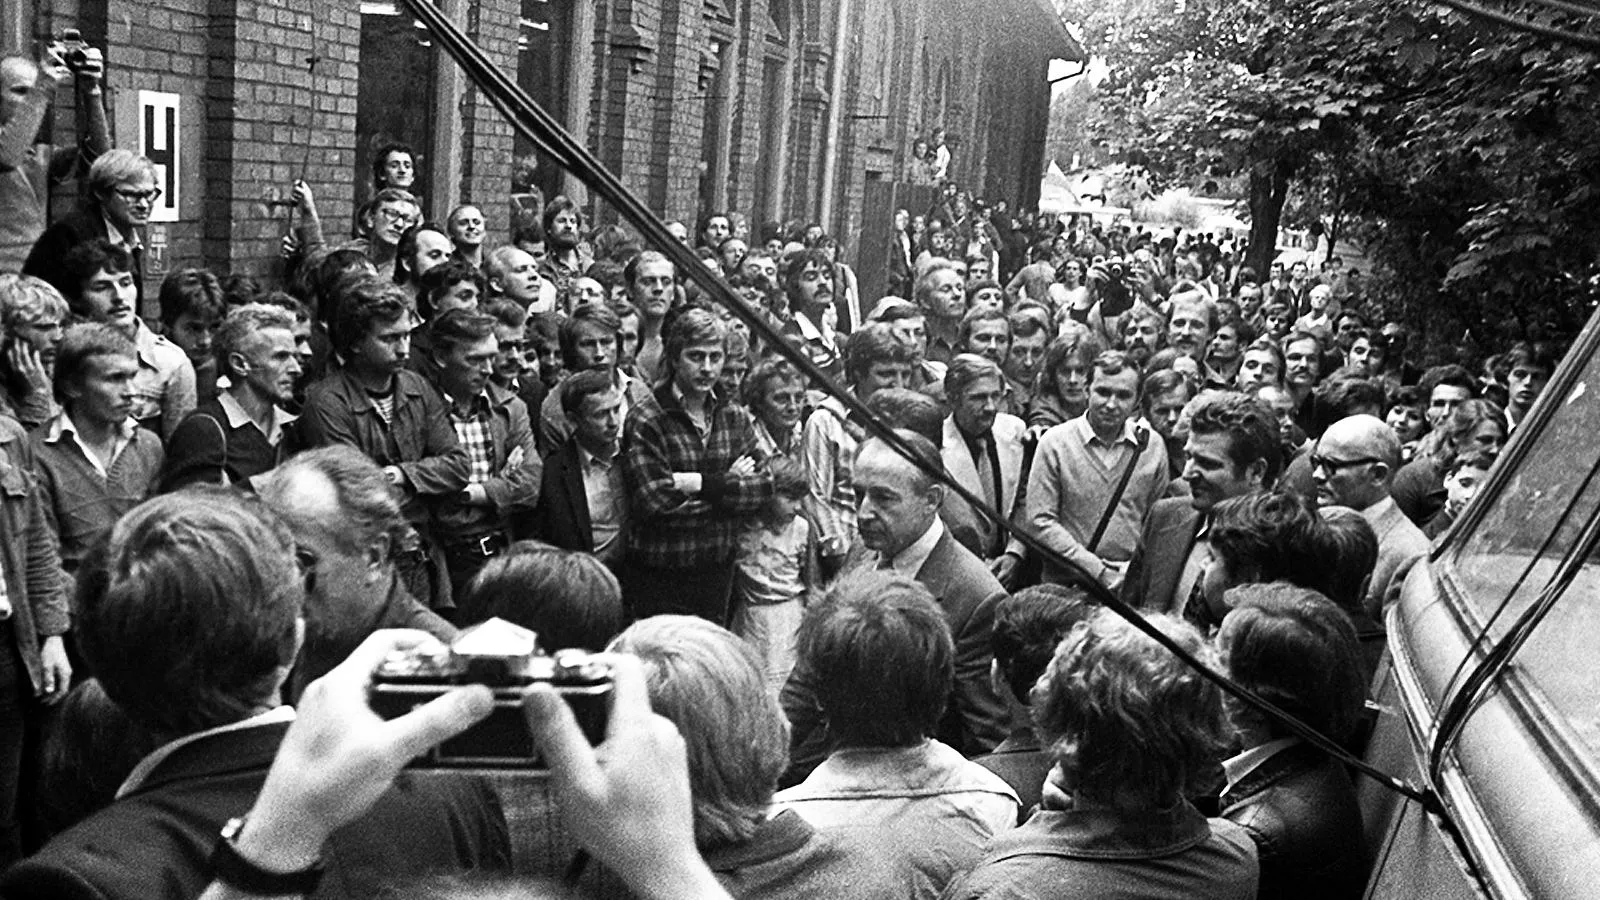 Члены правительственной делегации прибыли на переговоры с Межзаводским забастовочным комитетом Гданьска, 1980 год